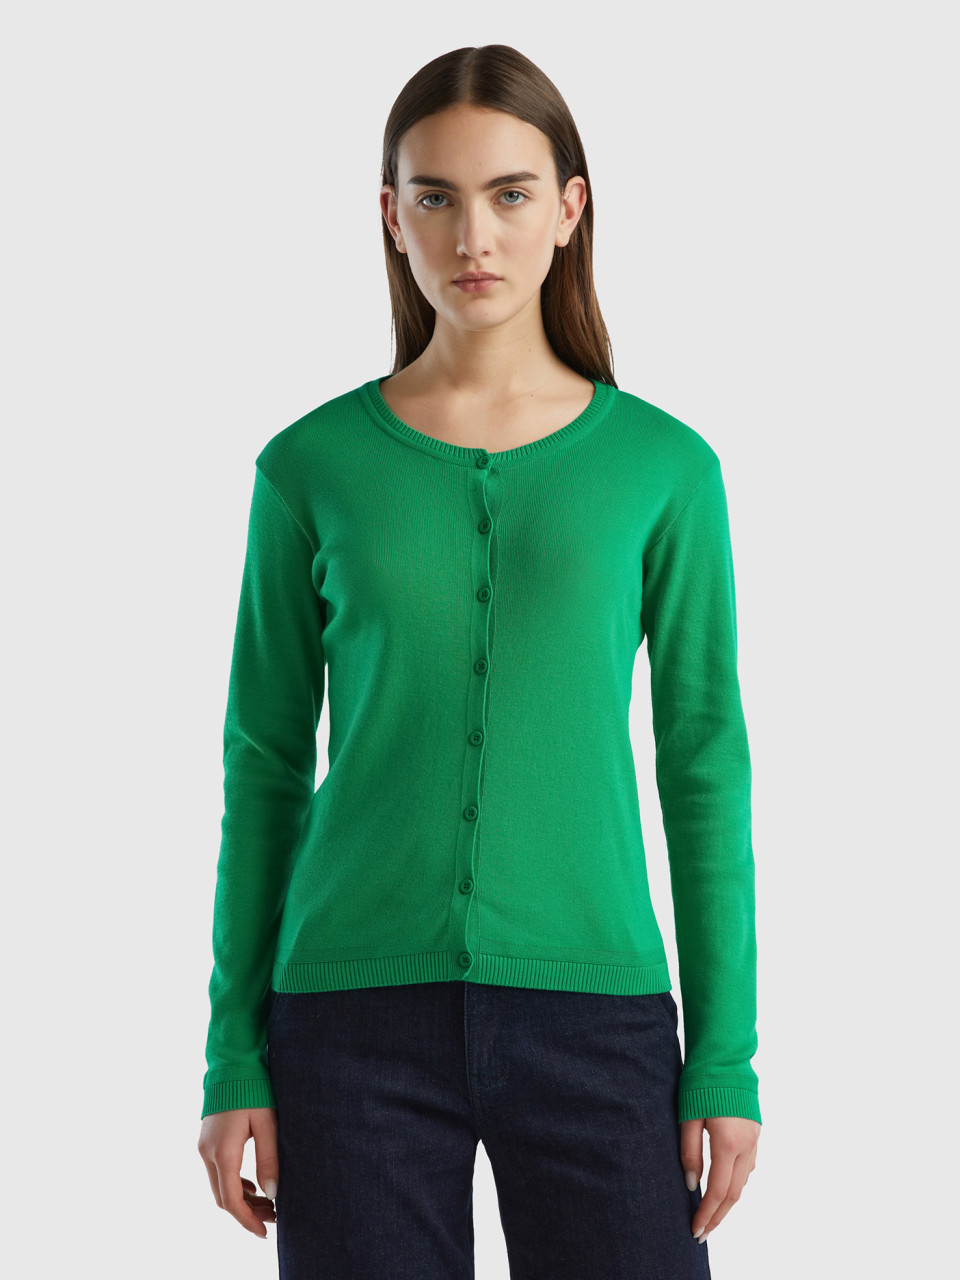 Benetton Online exclusive, Crew Neck Cardigan In Pure Cotton, Green, Women